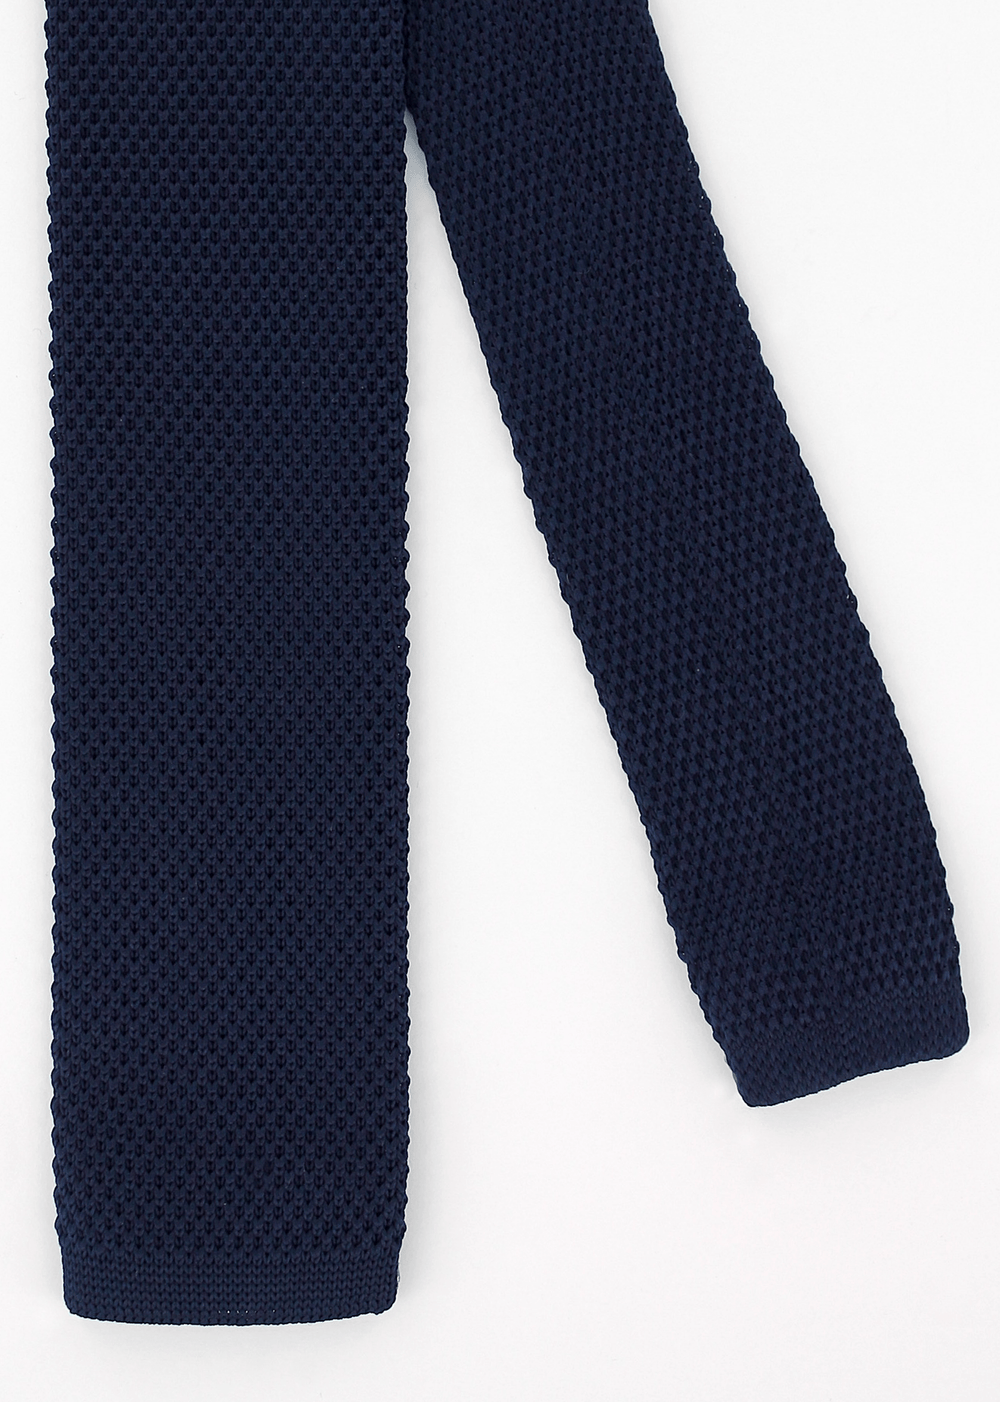 Cravate en maille bleu marine | Cotton Park